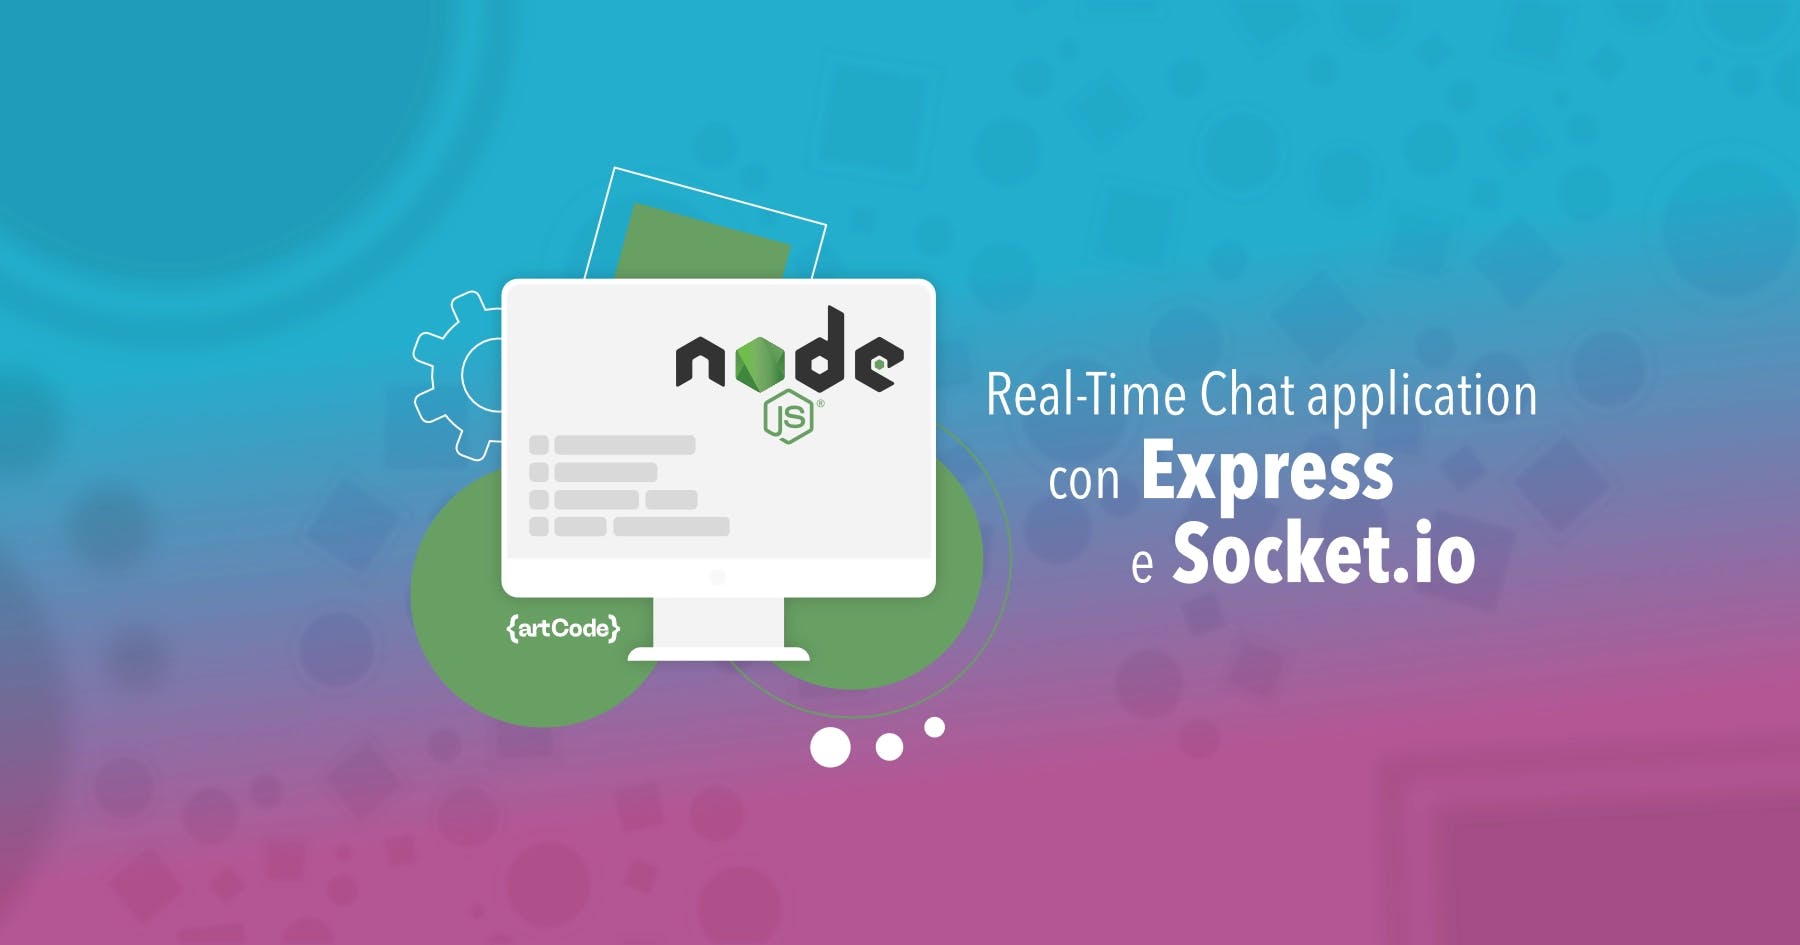 Real-Time application con Node.js: Creiamo una Chat in tempo reale